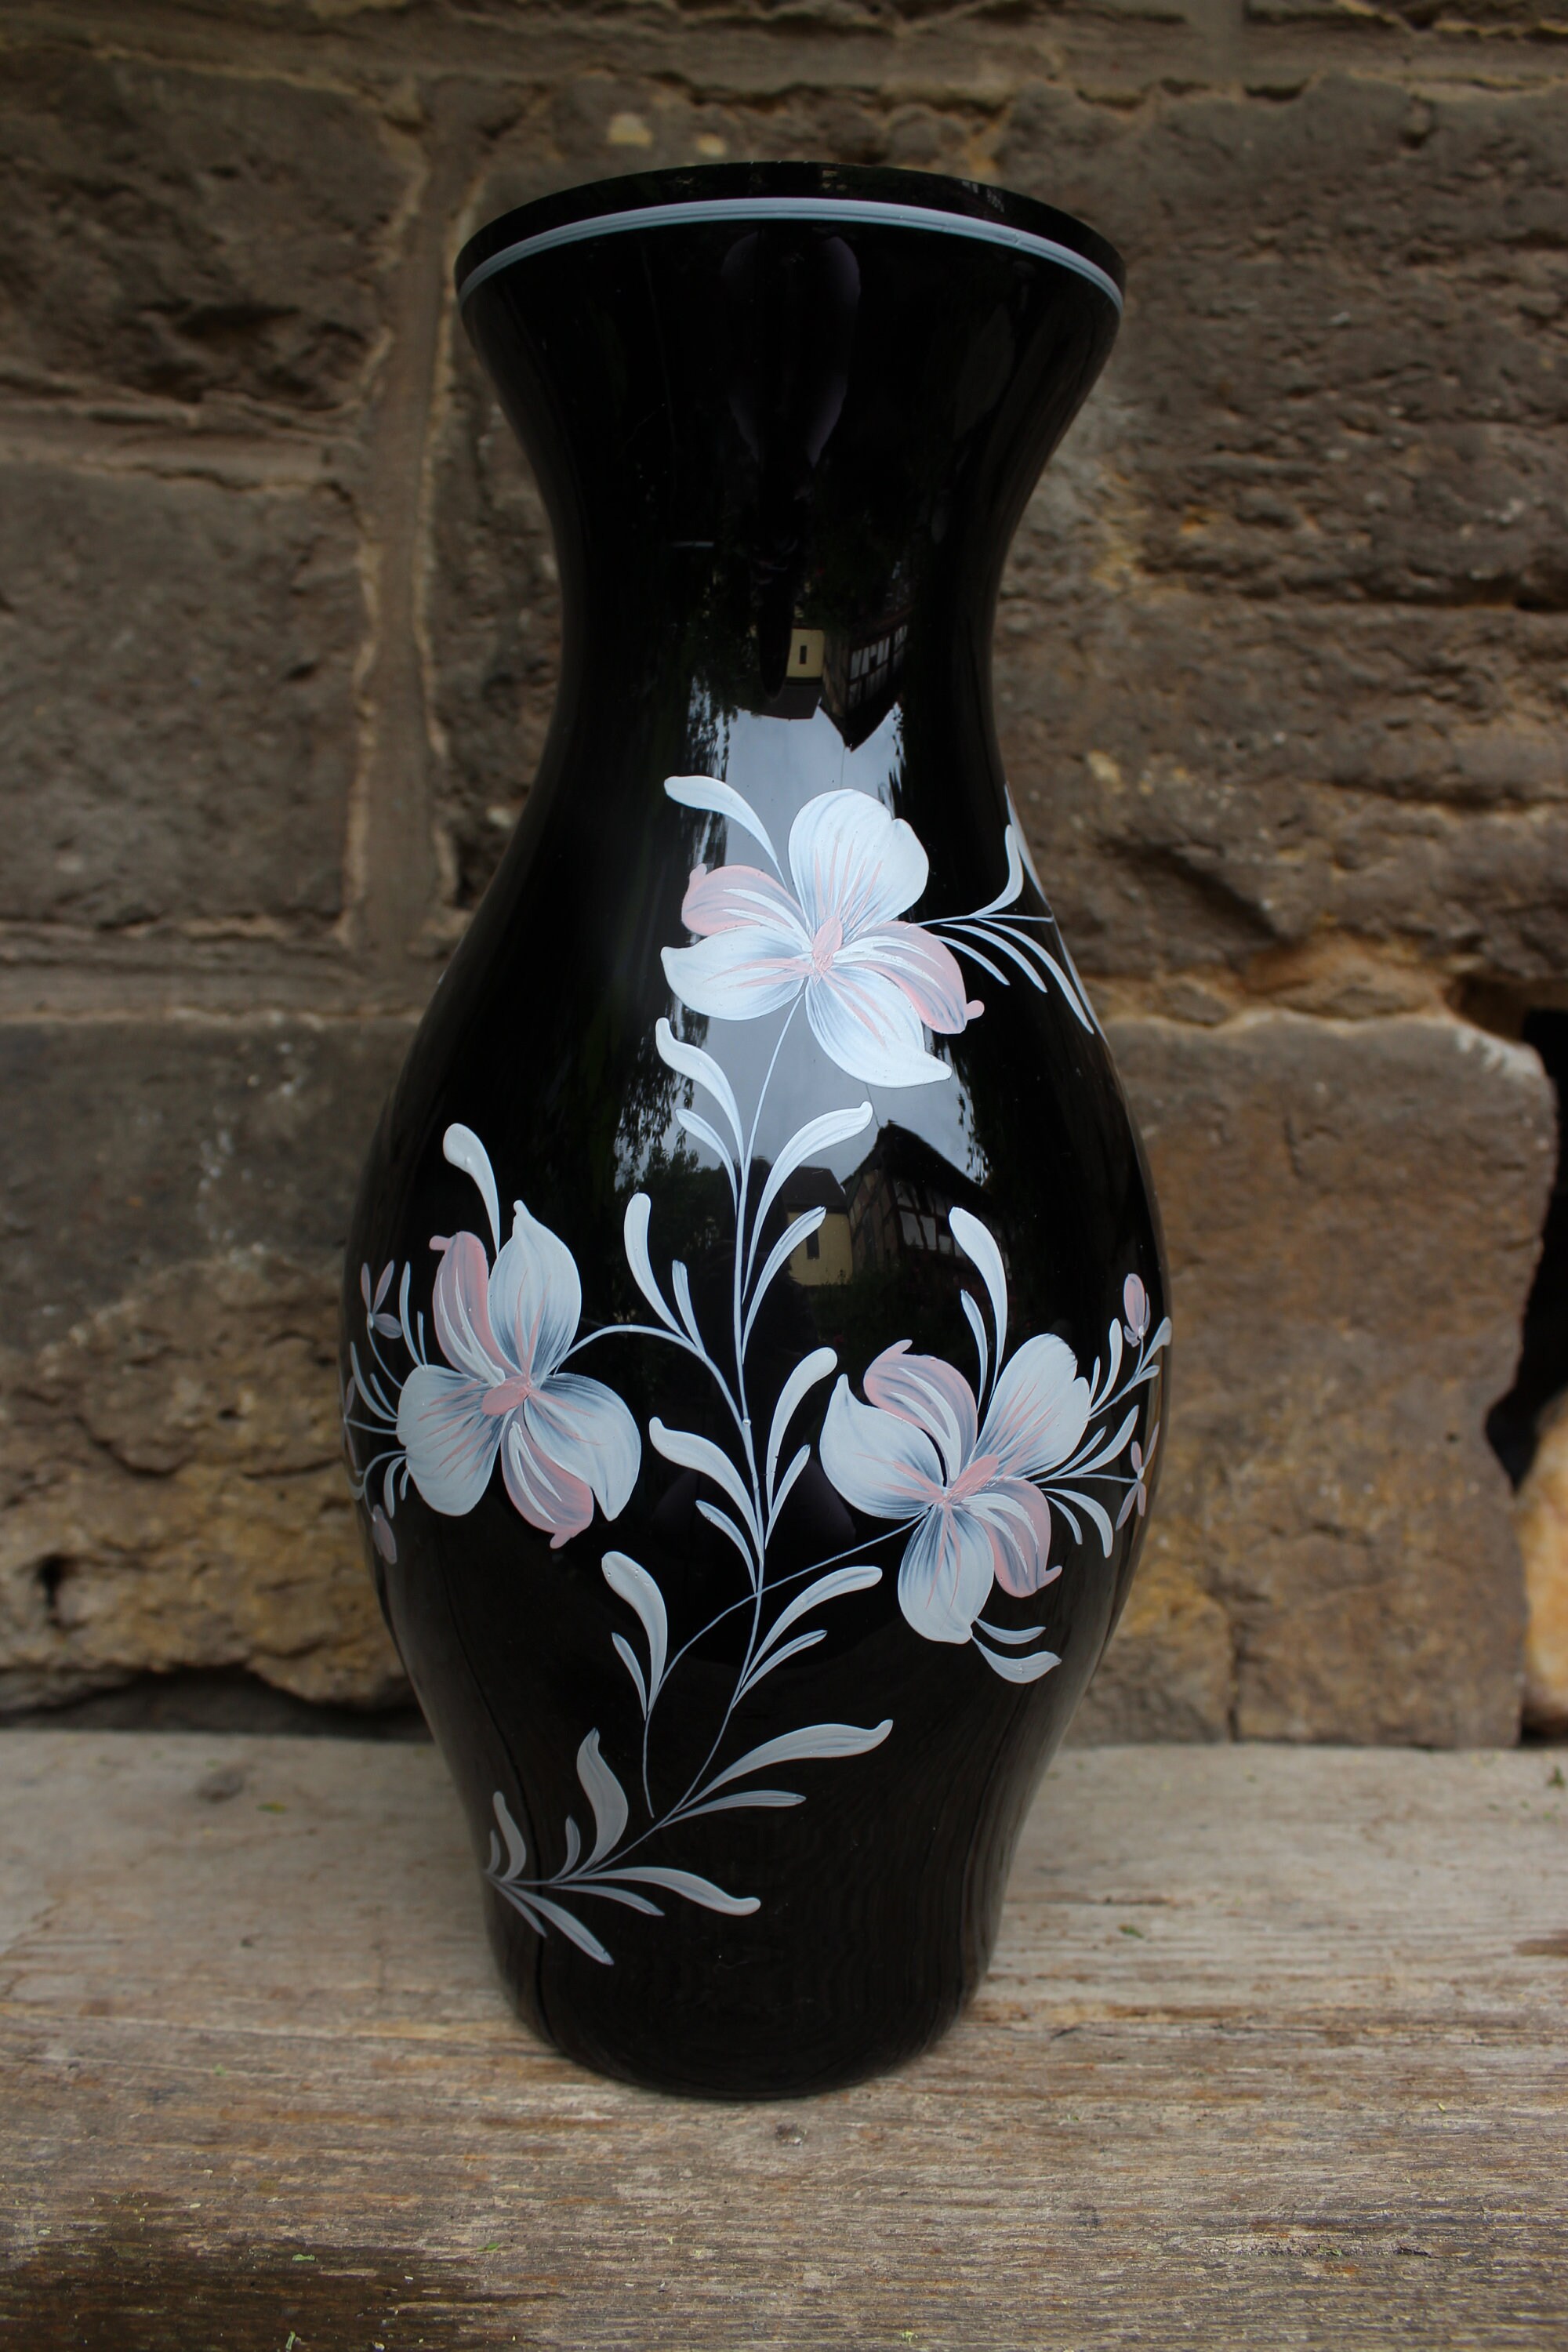 Eulenschnitt Vase of Glass Liebe large black - Buy online